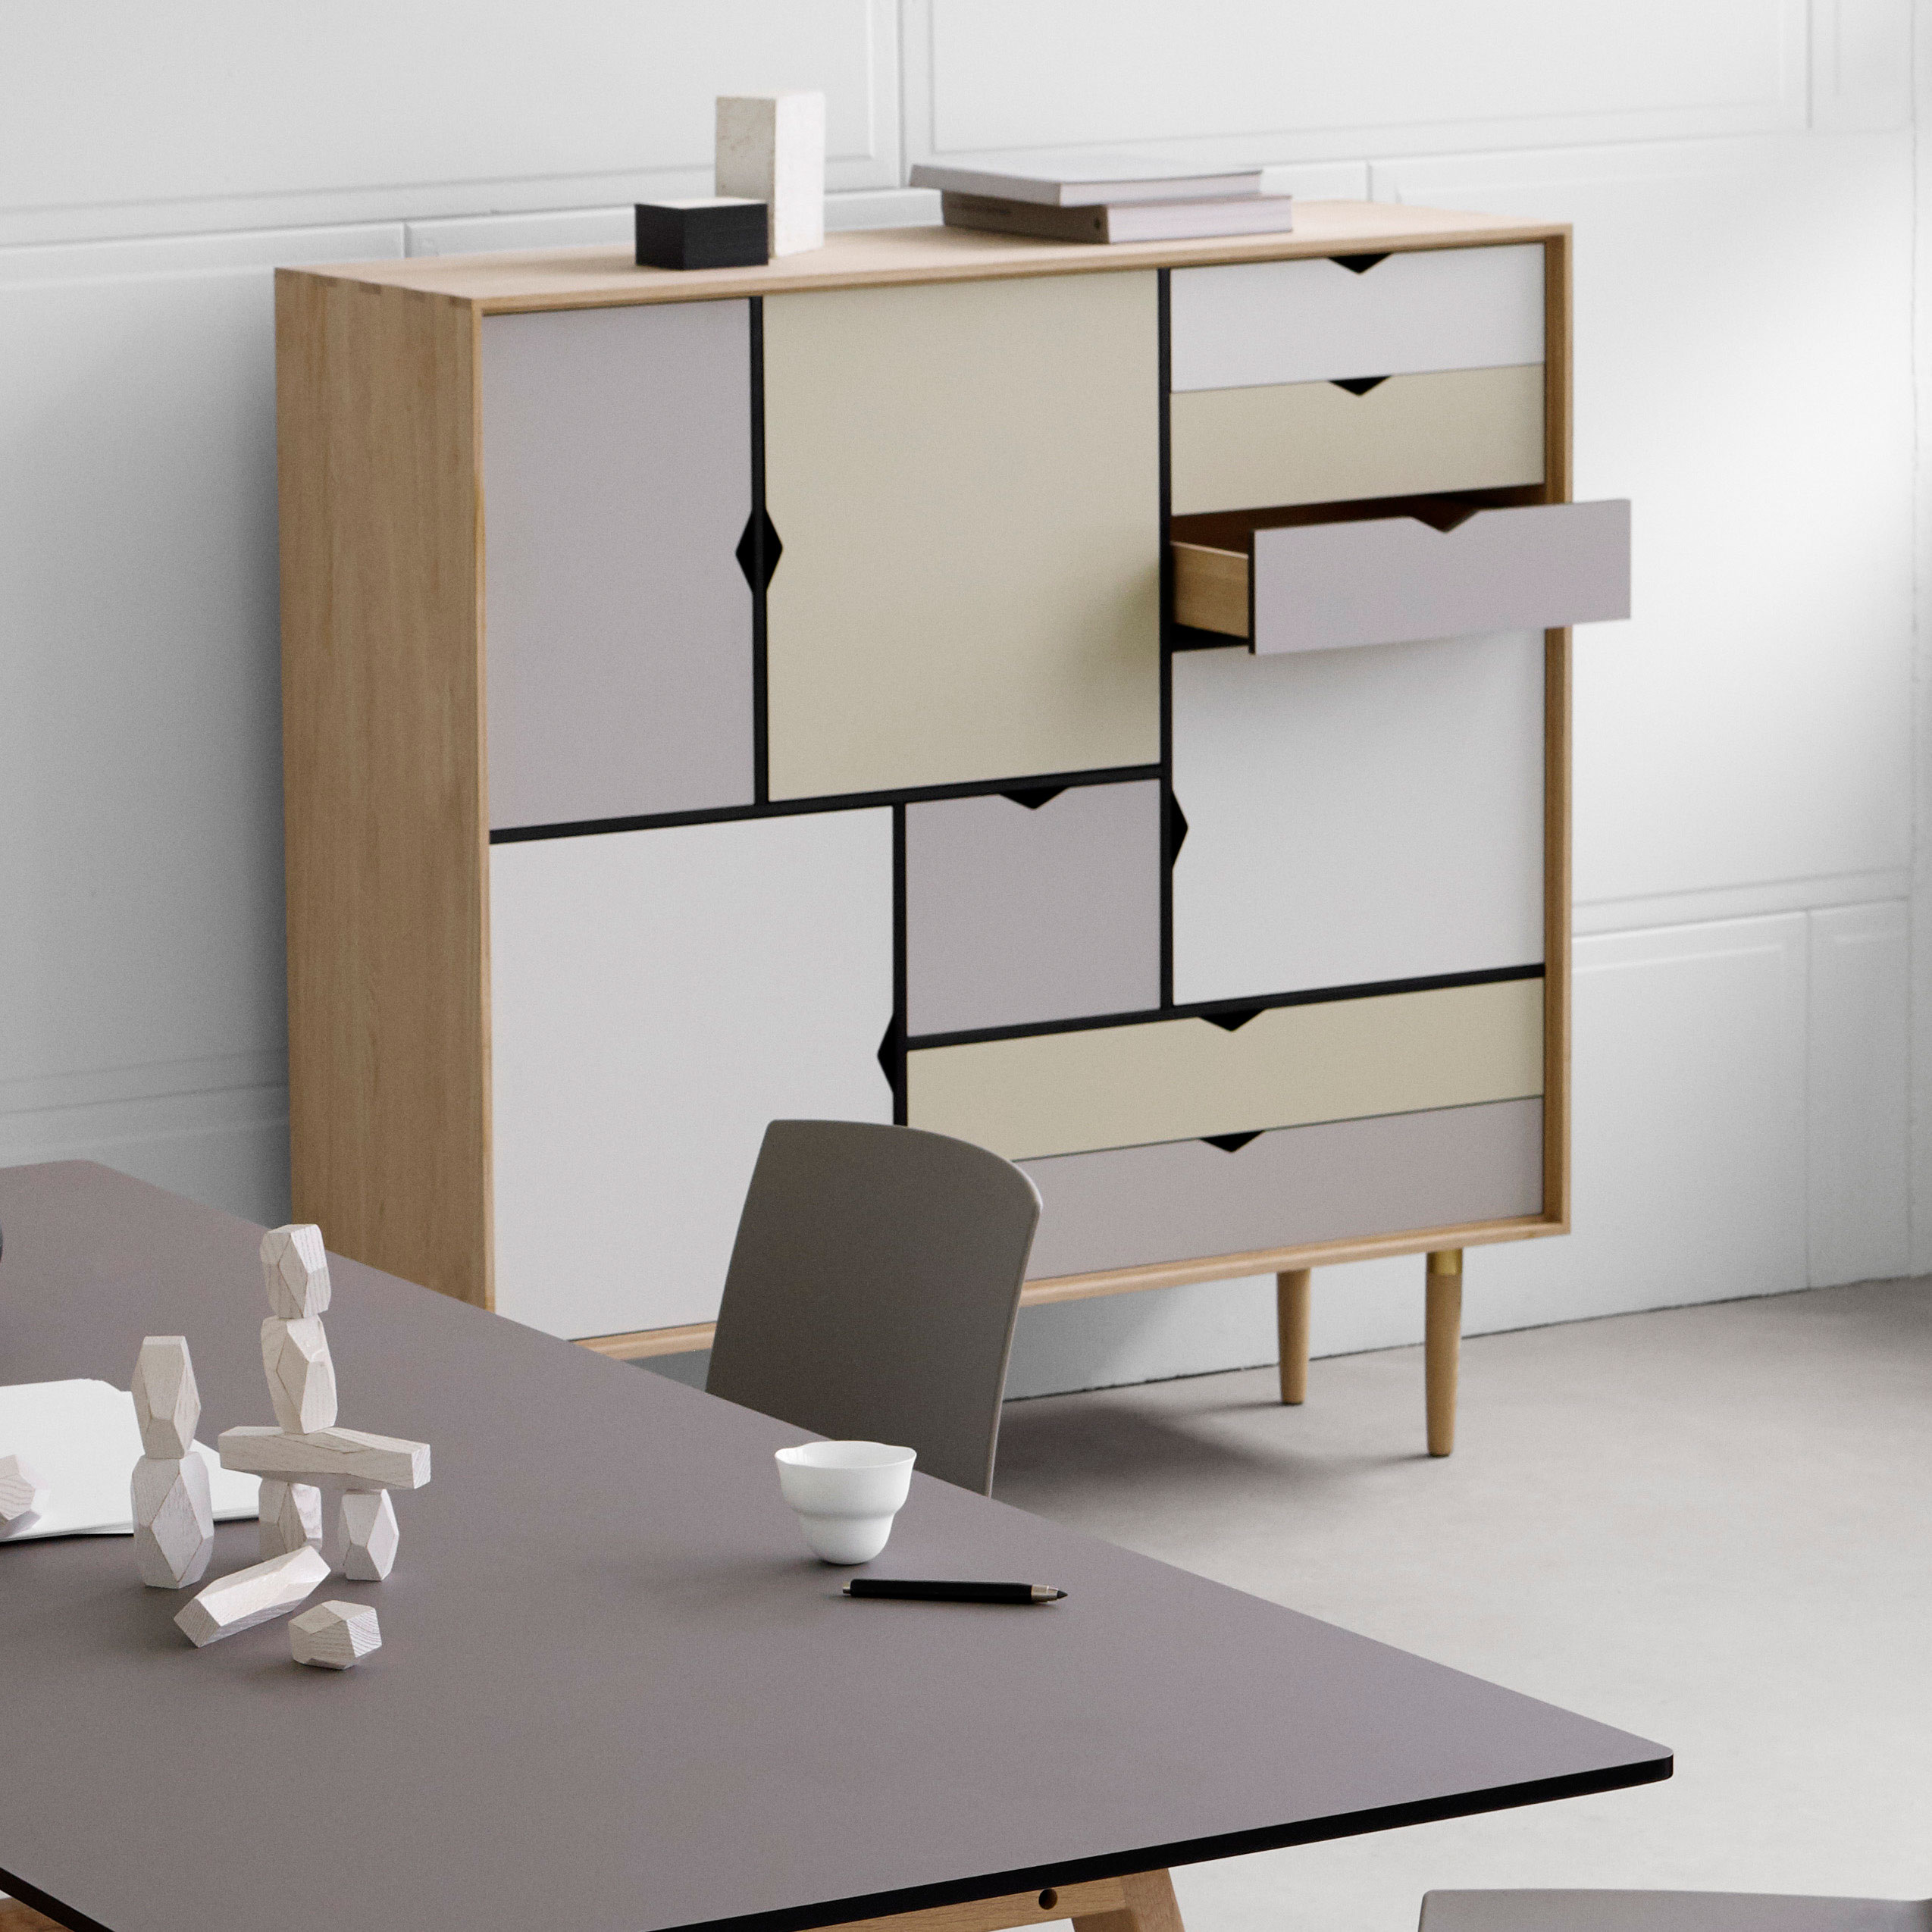 S3 Storage von Andersen Furniture